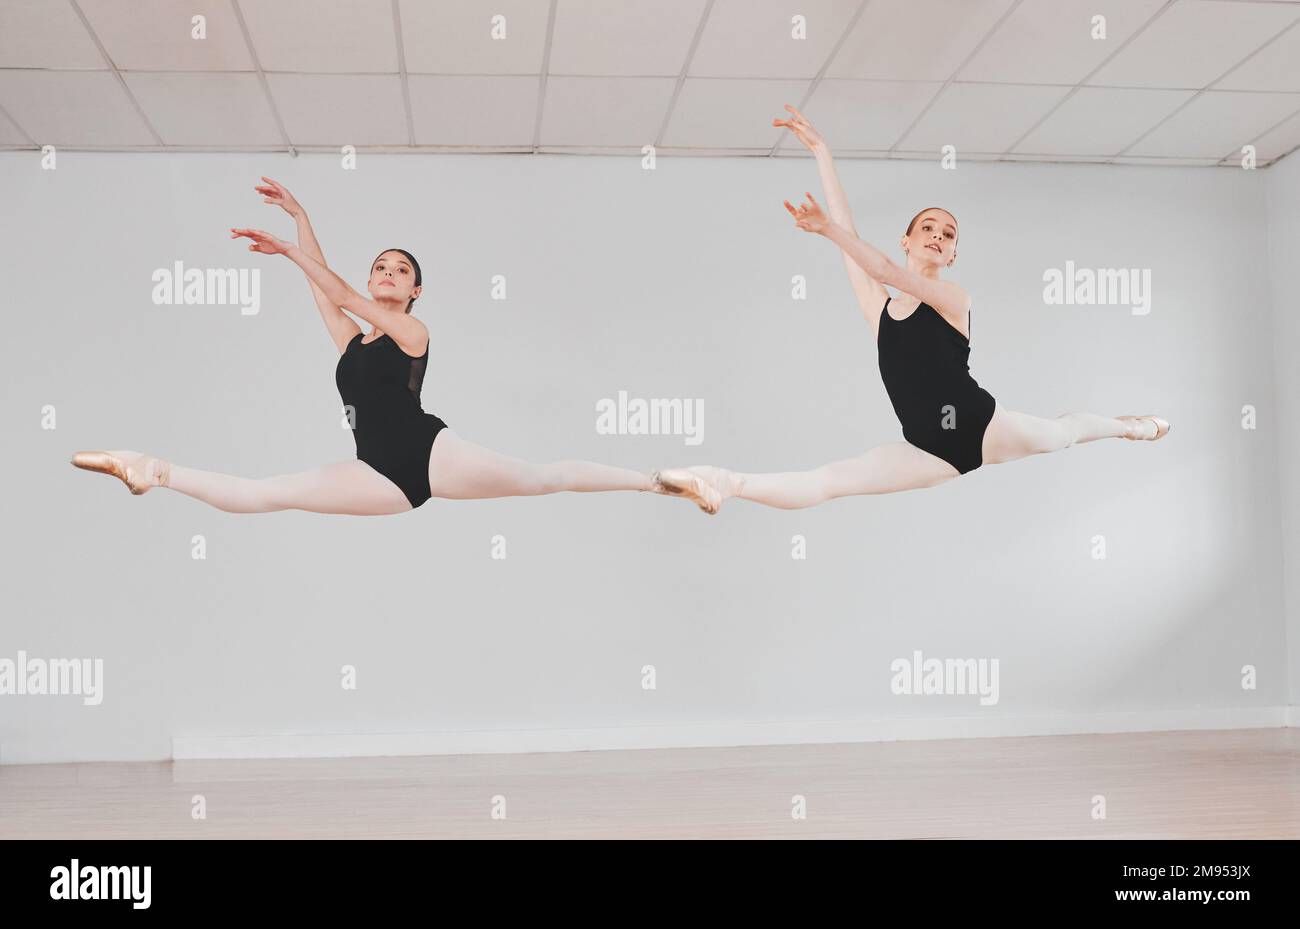 Con il balletto, il cielo è il limite. Ritratto di due ballerini che praticano insieme la loro routine. Foto Stock